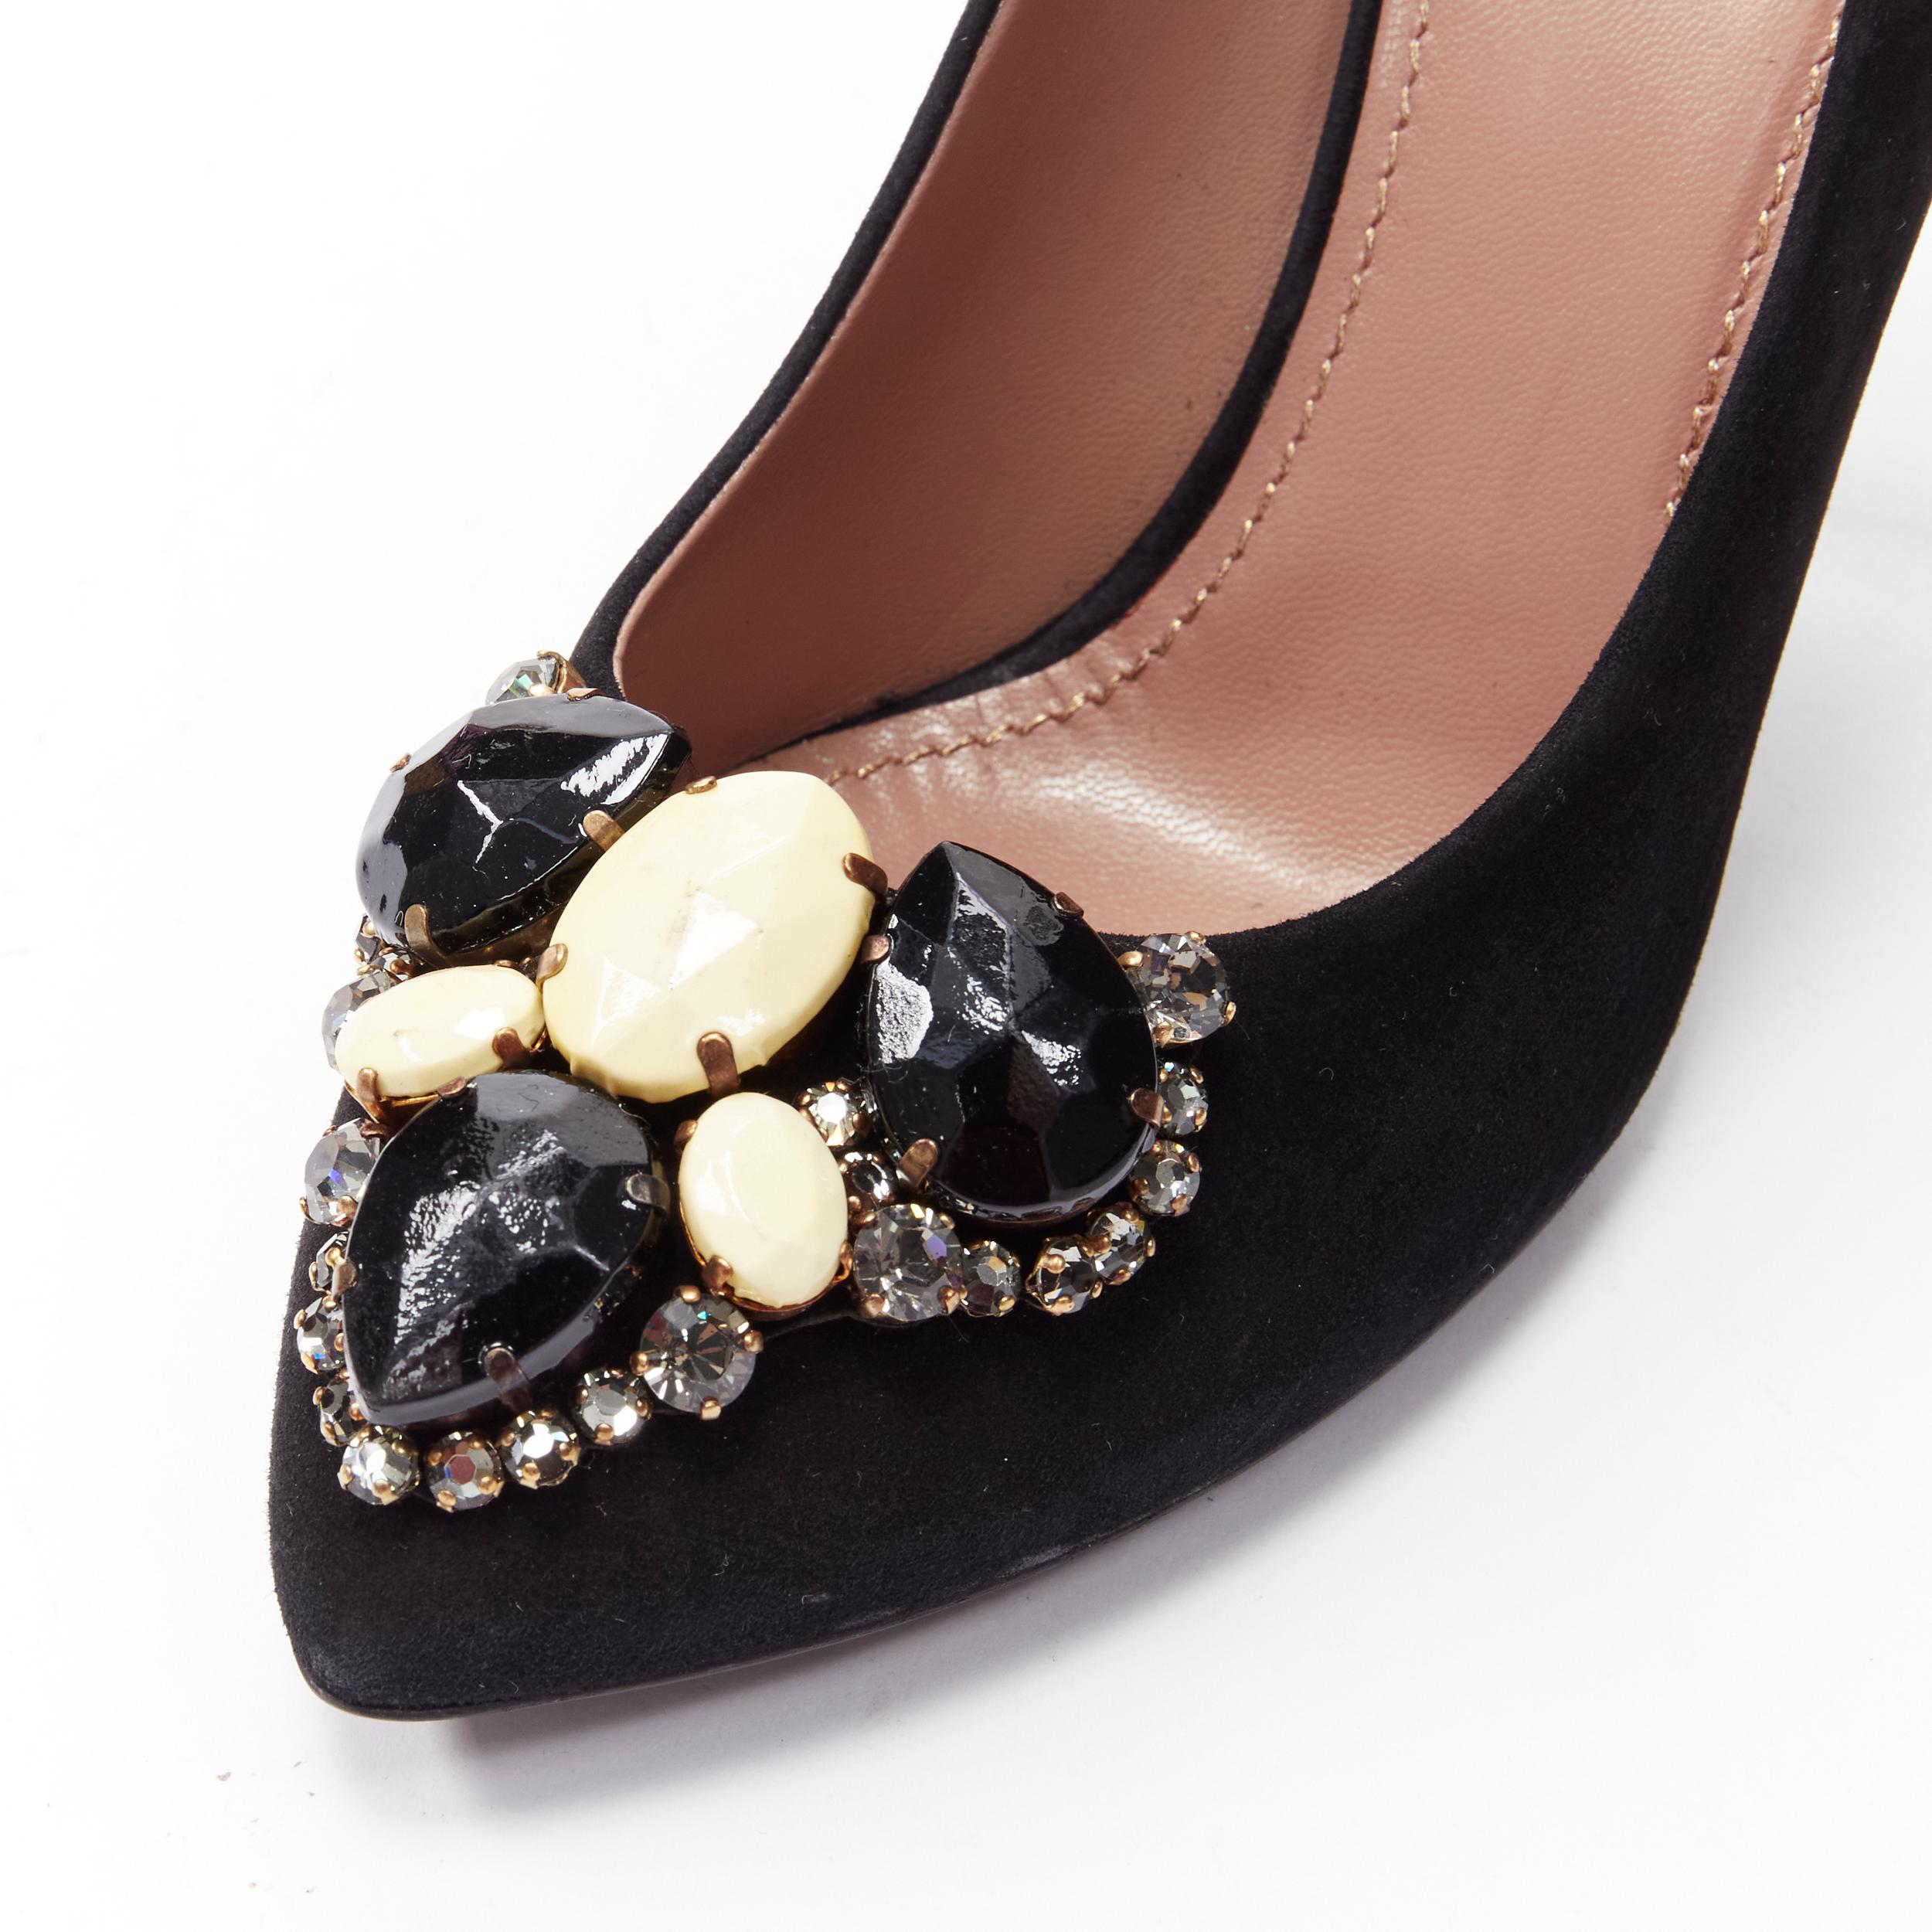 YVES SAINT LAURENT Charlie 105 black suede rhinestone jewel heel pump EU37.5 For Sale 3